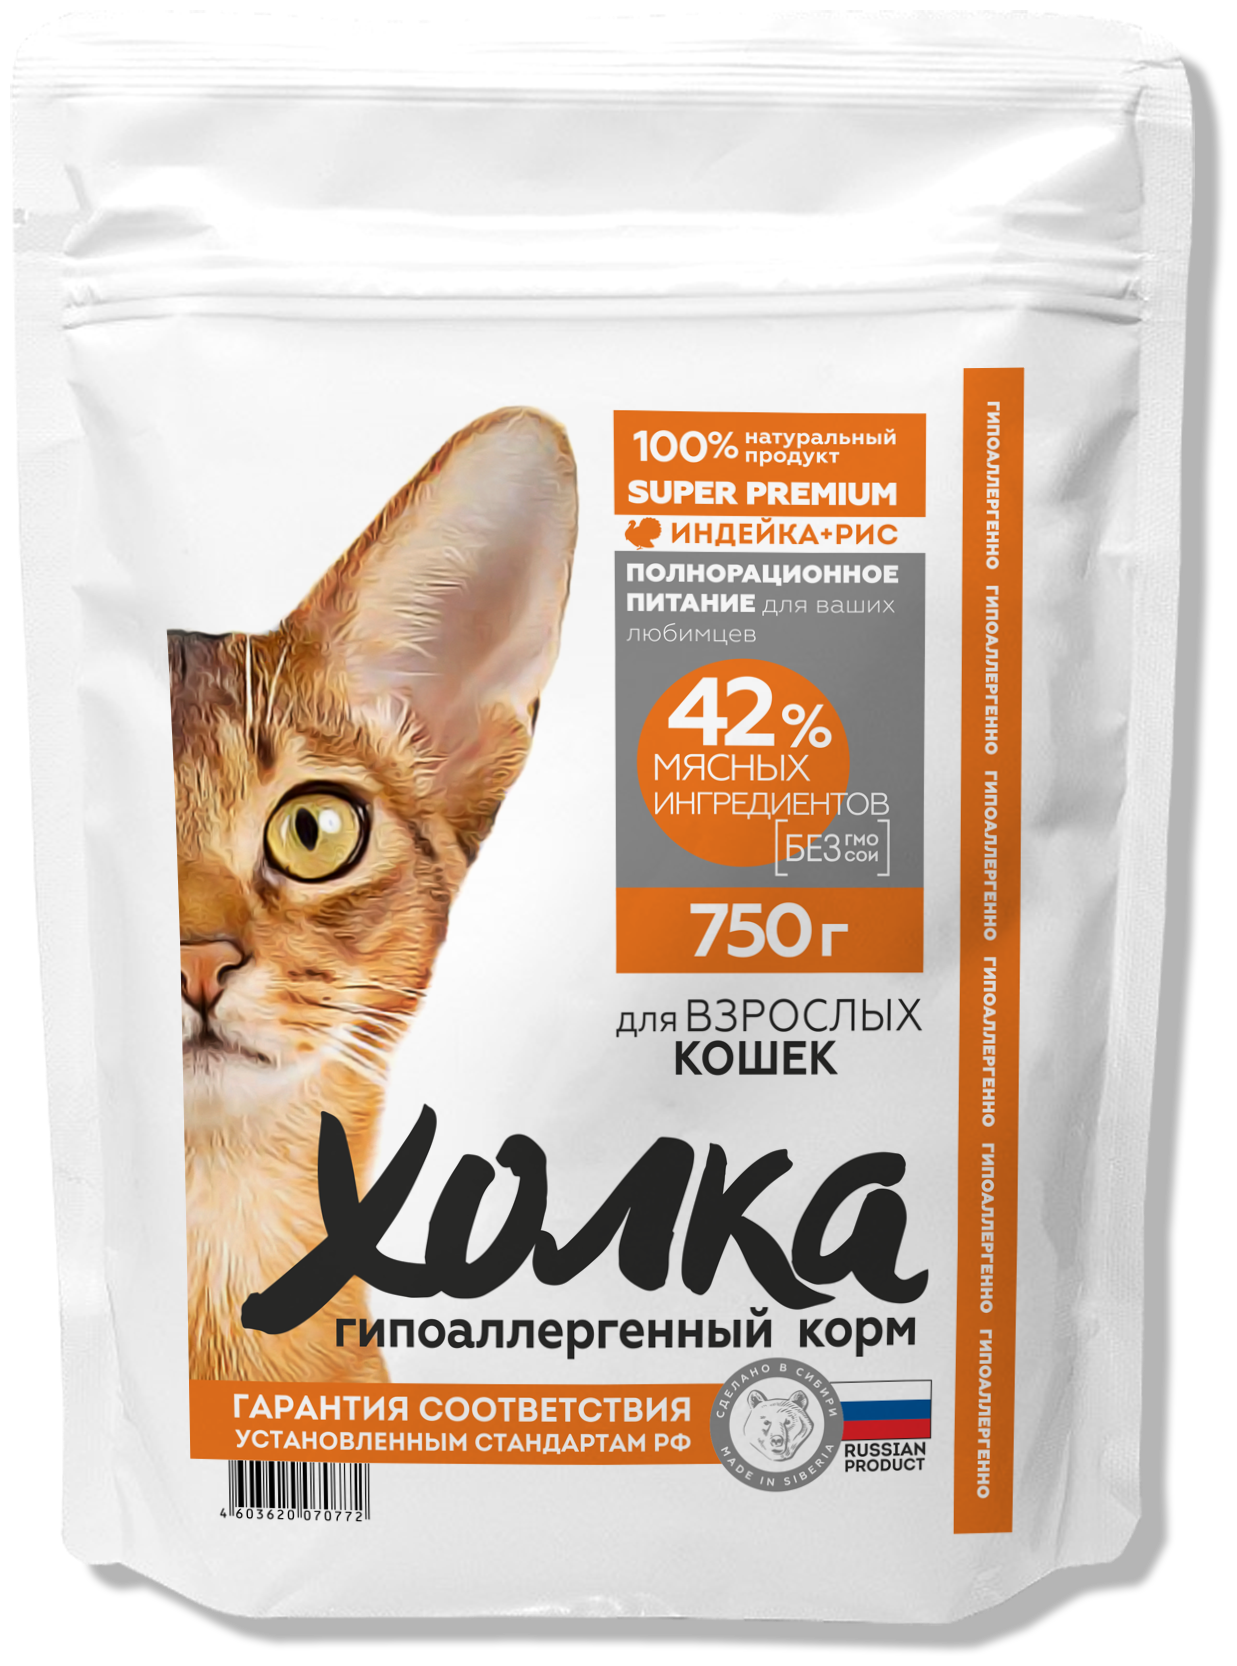 Гипоаллергенный полнорационный корм "Холка" для кошек ( 42% мяса) из индейки и риса 0,75 кг